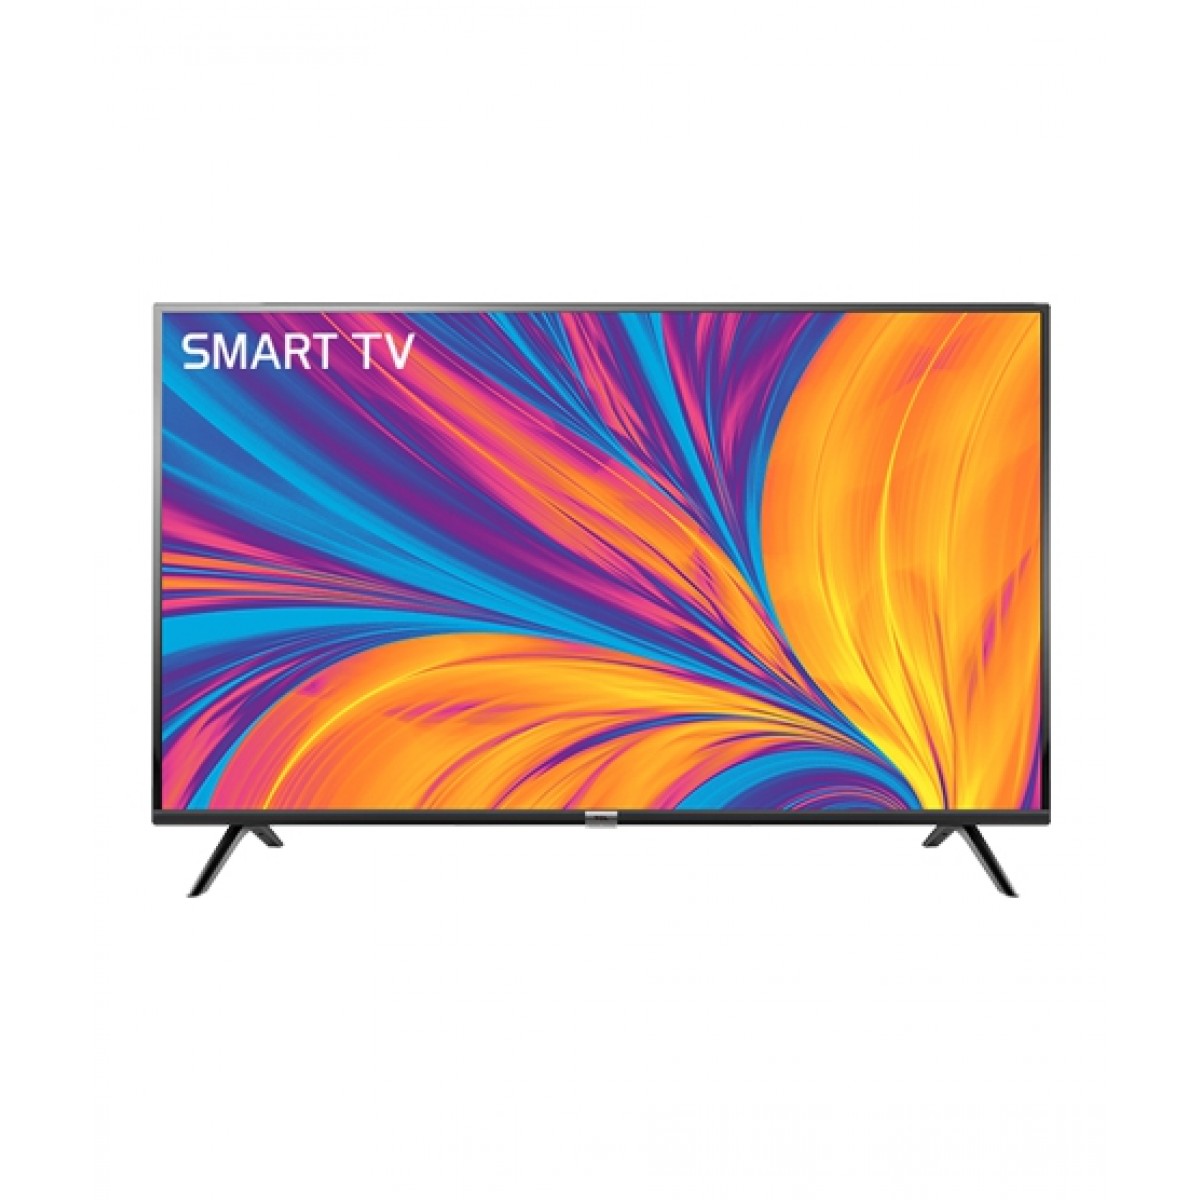 Tcl 32 Full Hd Smart Led Tv 32s6500 Sukena Pk Online Shopping